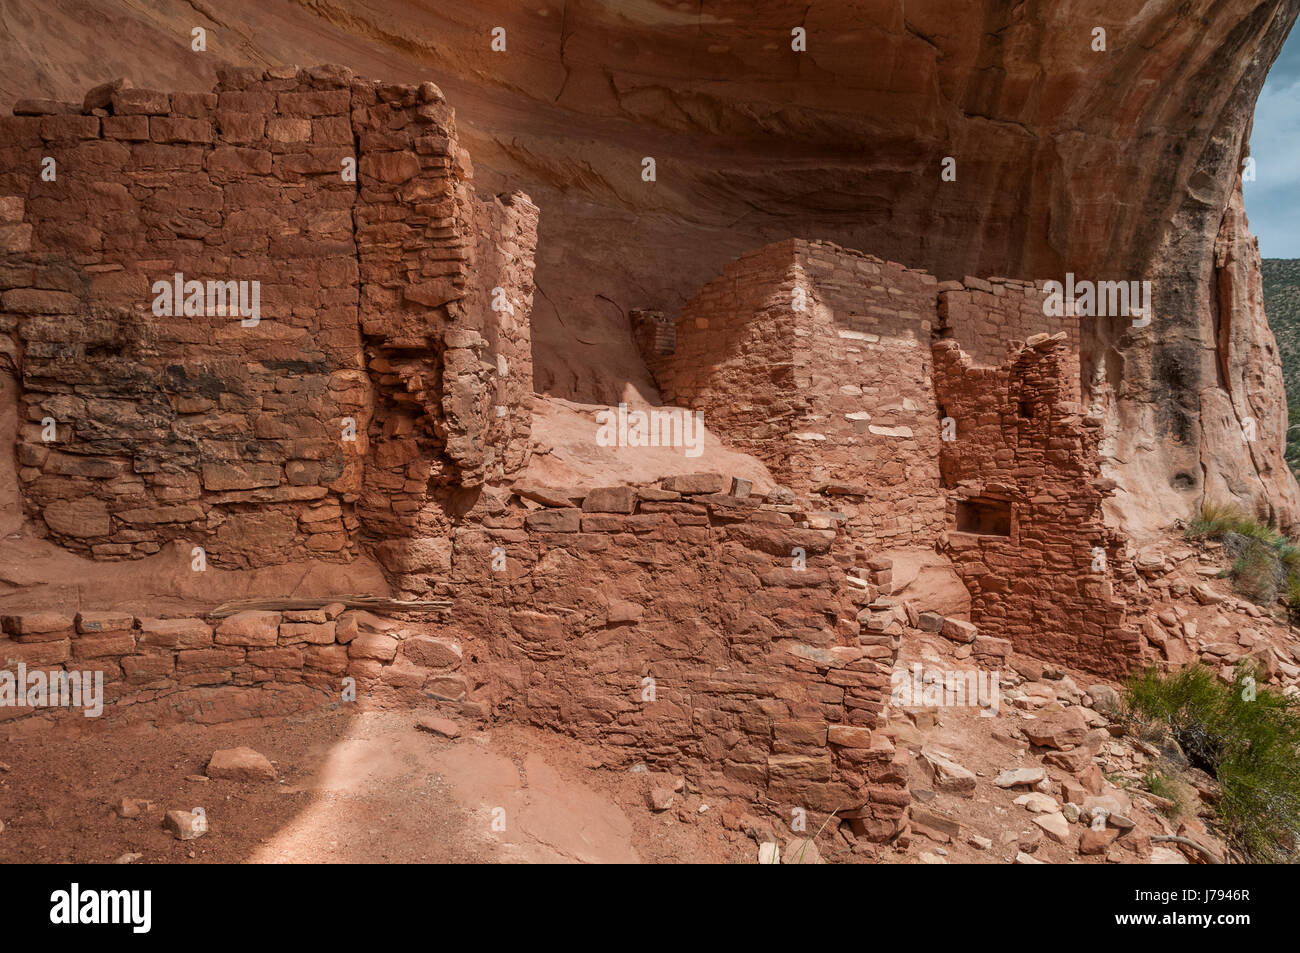 Alcôve ensoleillée, ruines Anasazi, Sand Canyon Trail, Canyons of the Ancients National Monument au nord-ouest de Cortez, Colorado. Banque D'Images